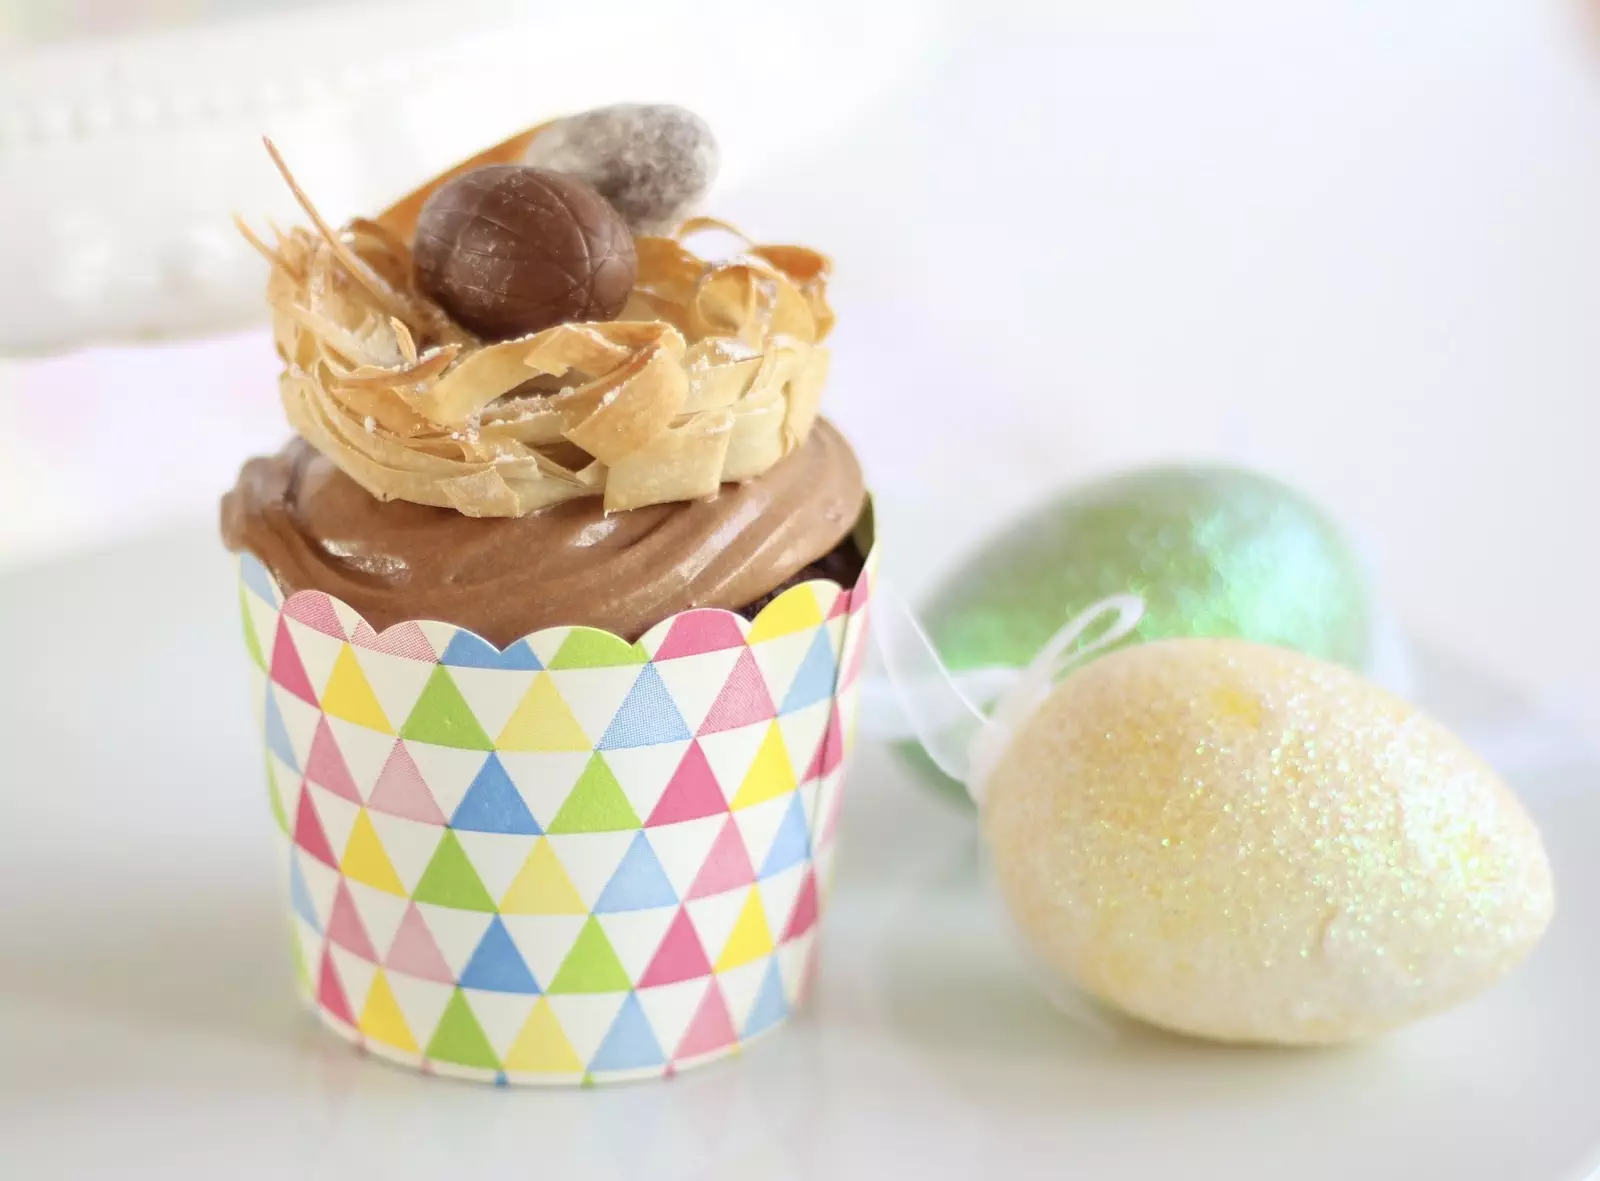 Traumhaft flauschige Cupcakes mit Schokoladenbuttercreme und Osternest aus Knusperteig - Video Rezept